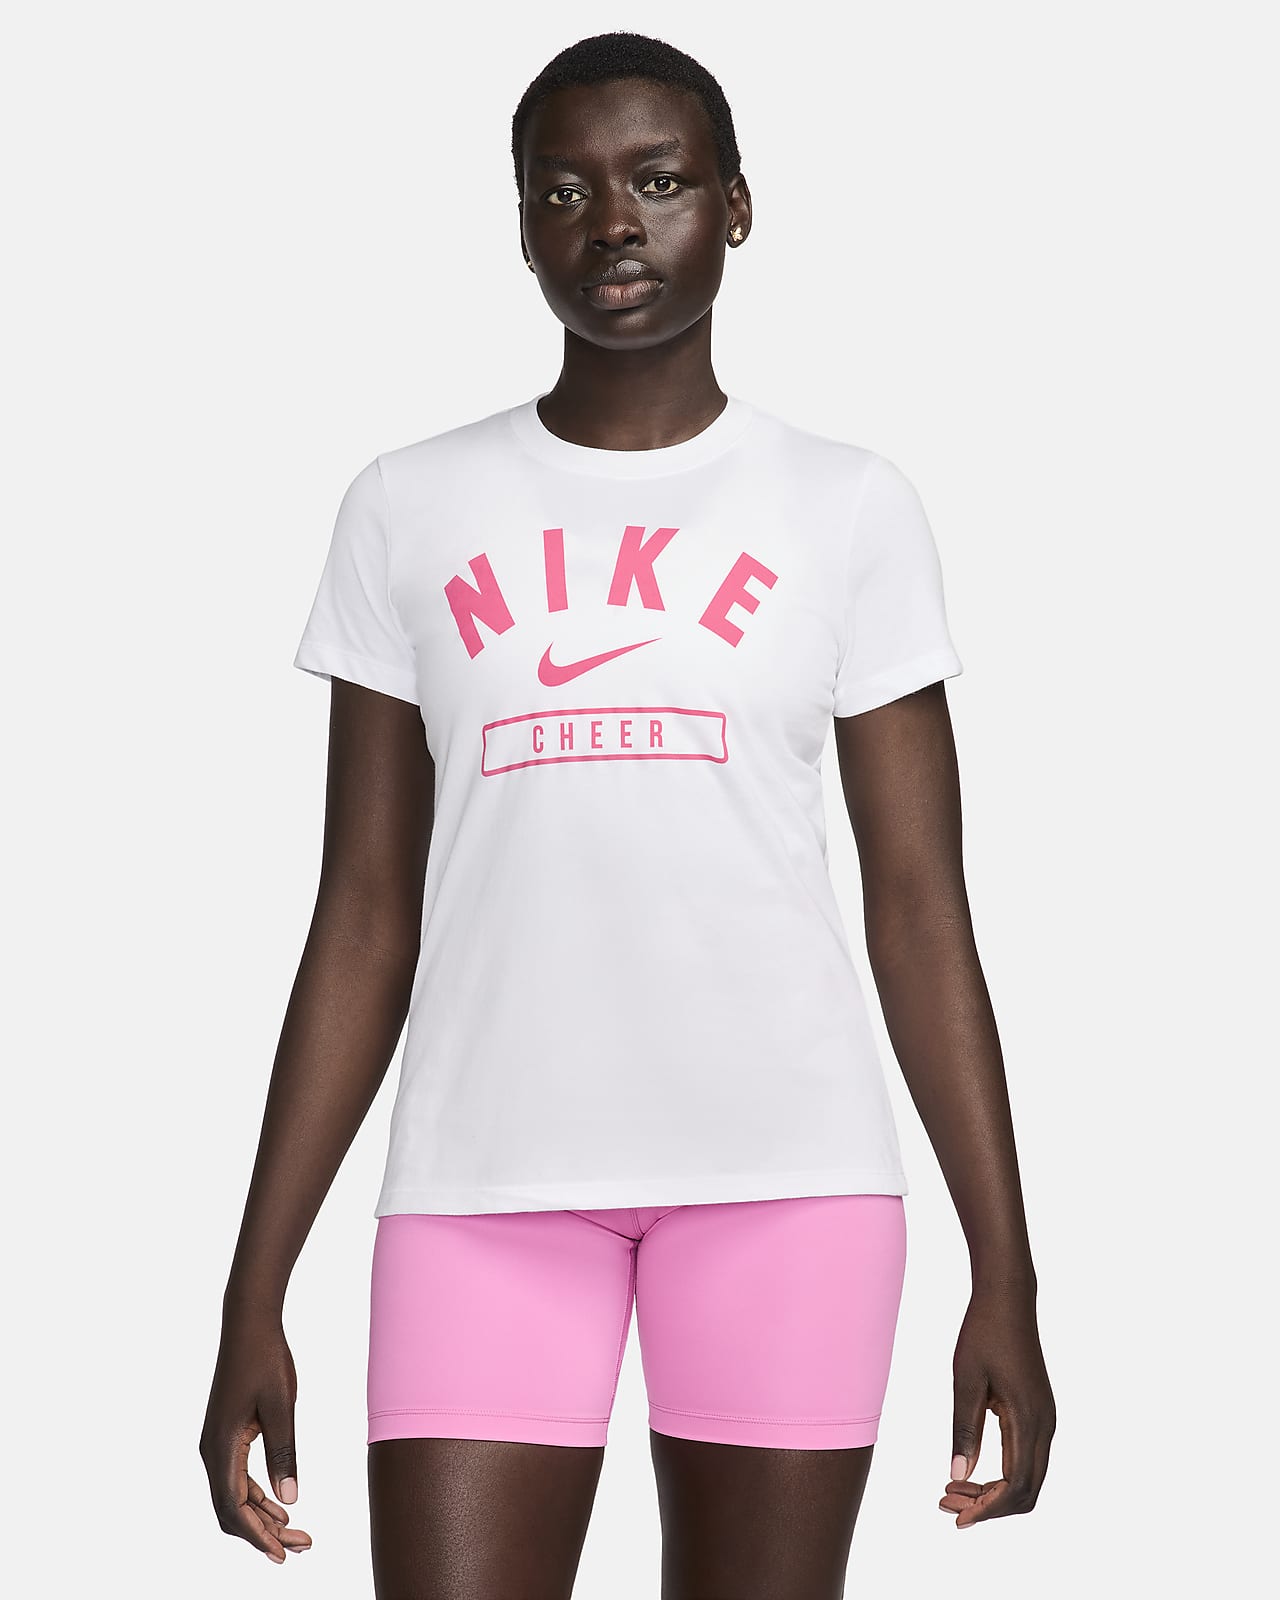 Nike Women's Cheer T-Shirt